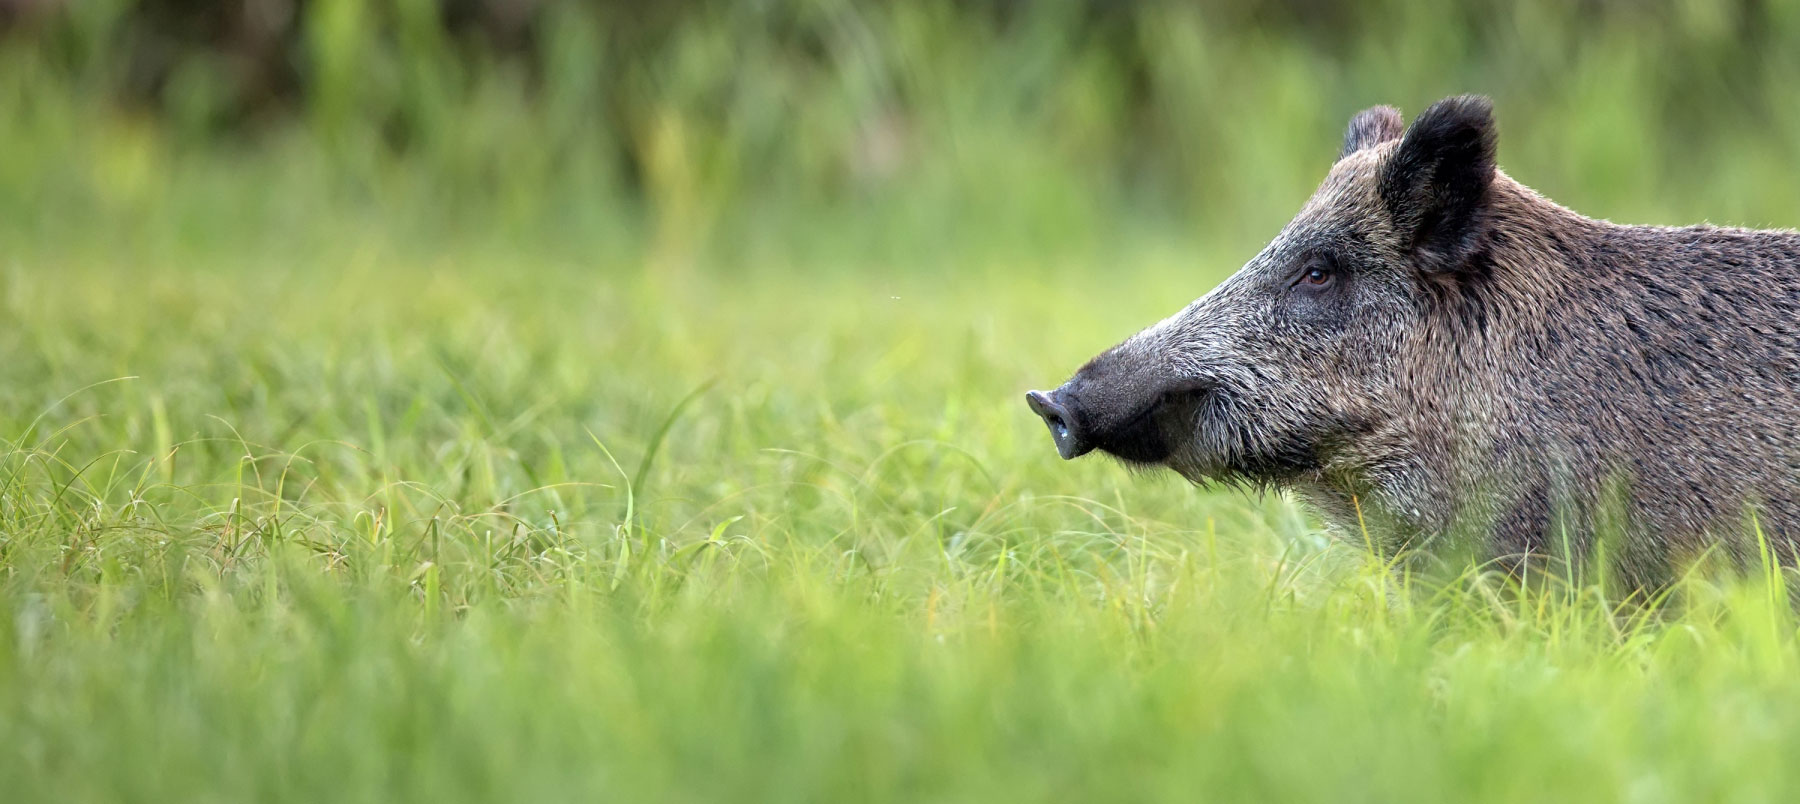 20907675-wild-boar-in-the-grass-a-portrait.jpg